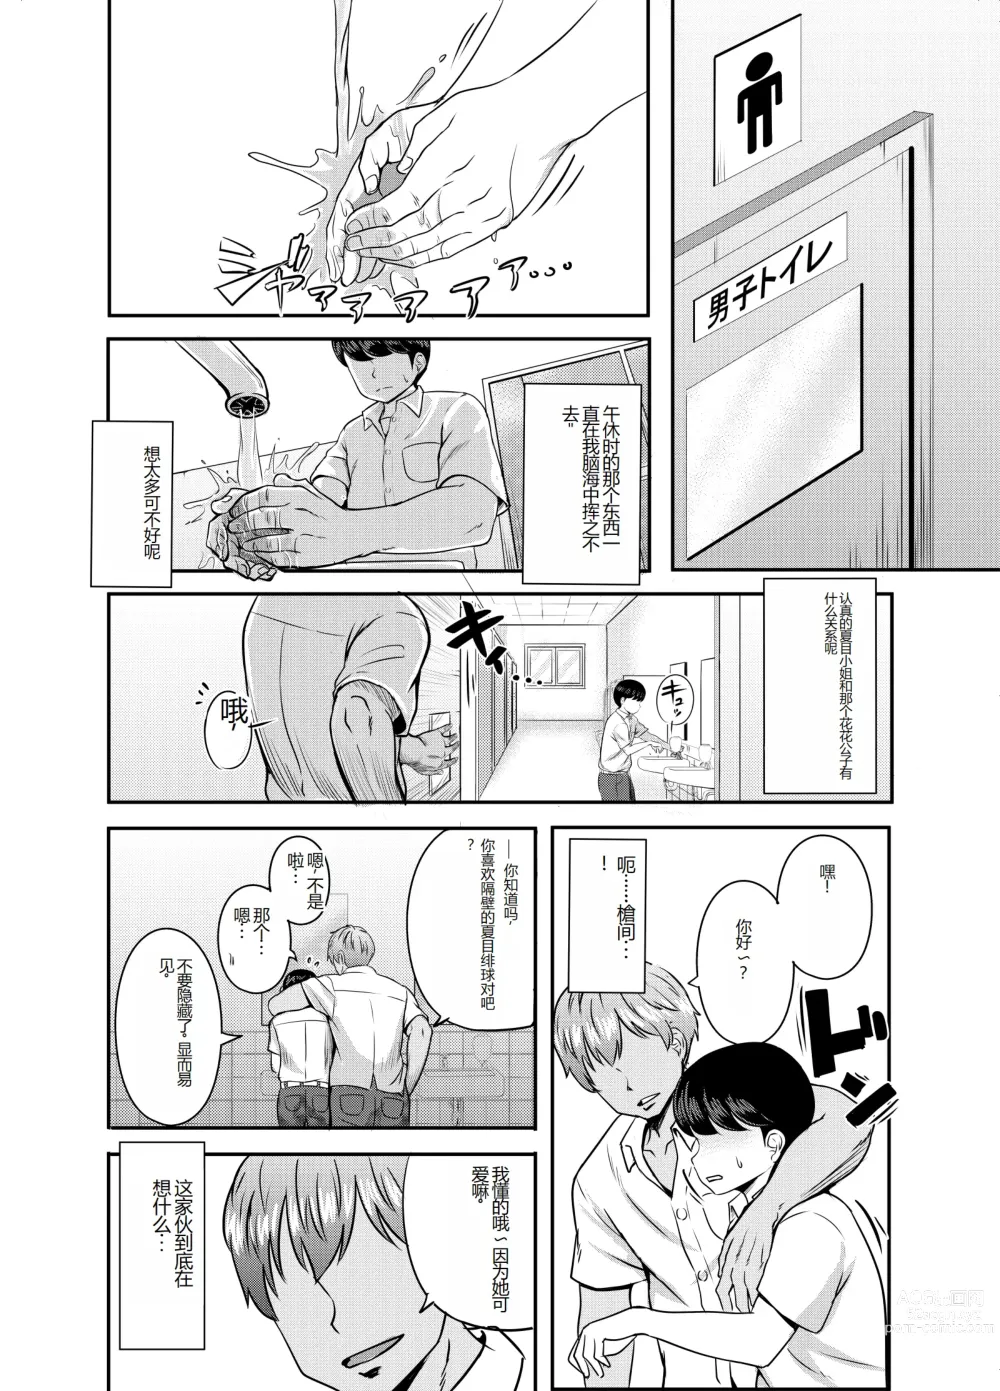 Page 54 of doujinshi 2-nen 3-kumi